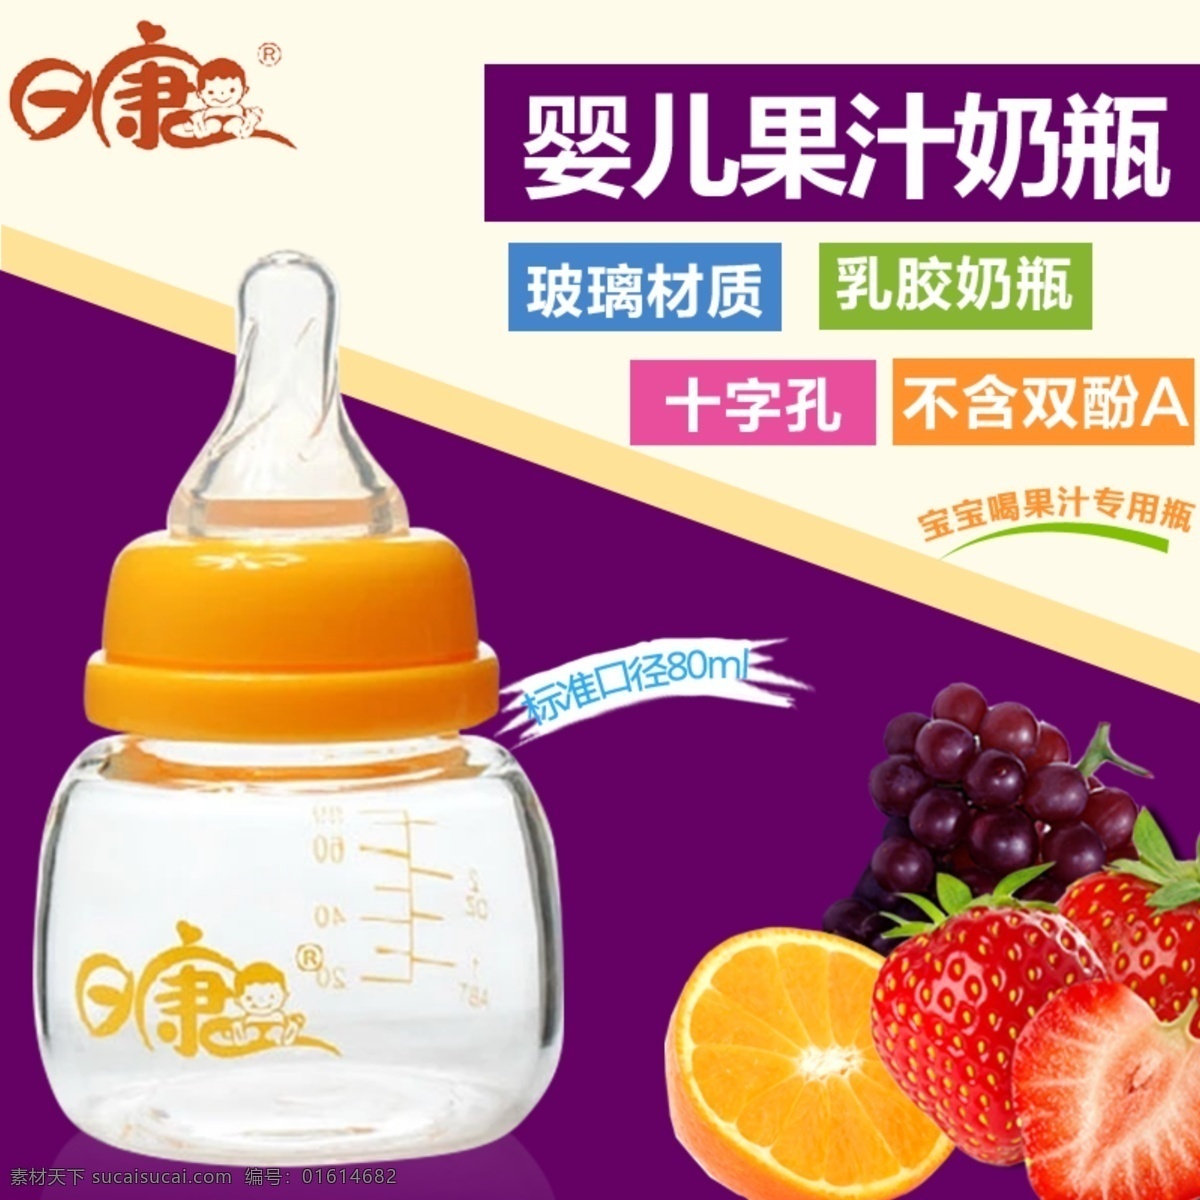 日 康 婴儿 果汁 奶瓶 主图 淘宝素材 淘宝设计 淘宝模板下载